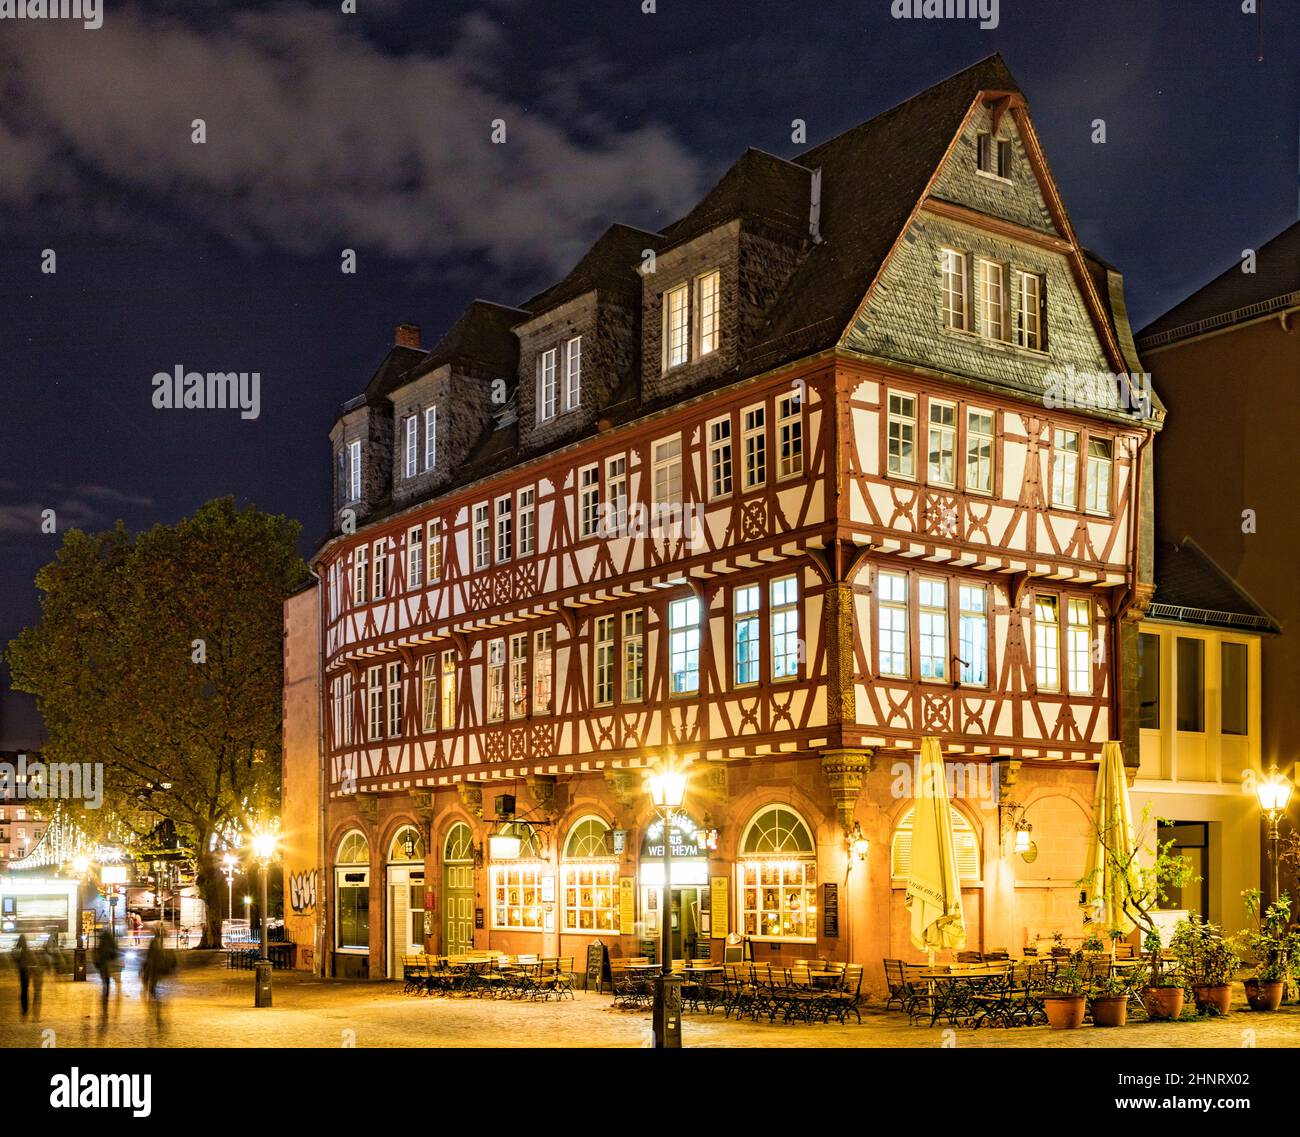 Antiguo edificio medieval en la plaza Romerberg. Está hecho en estilo de edad media en Altstadt - un centro histórico de la ciudad Foto de stock